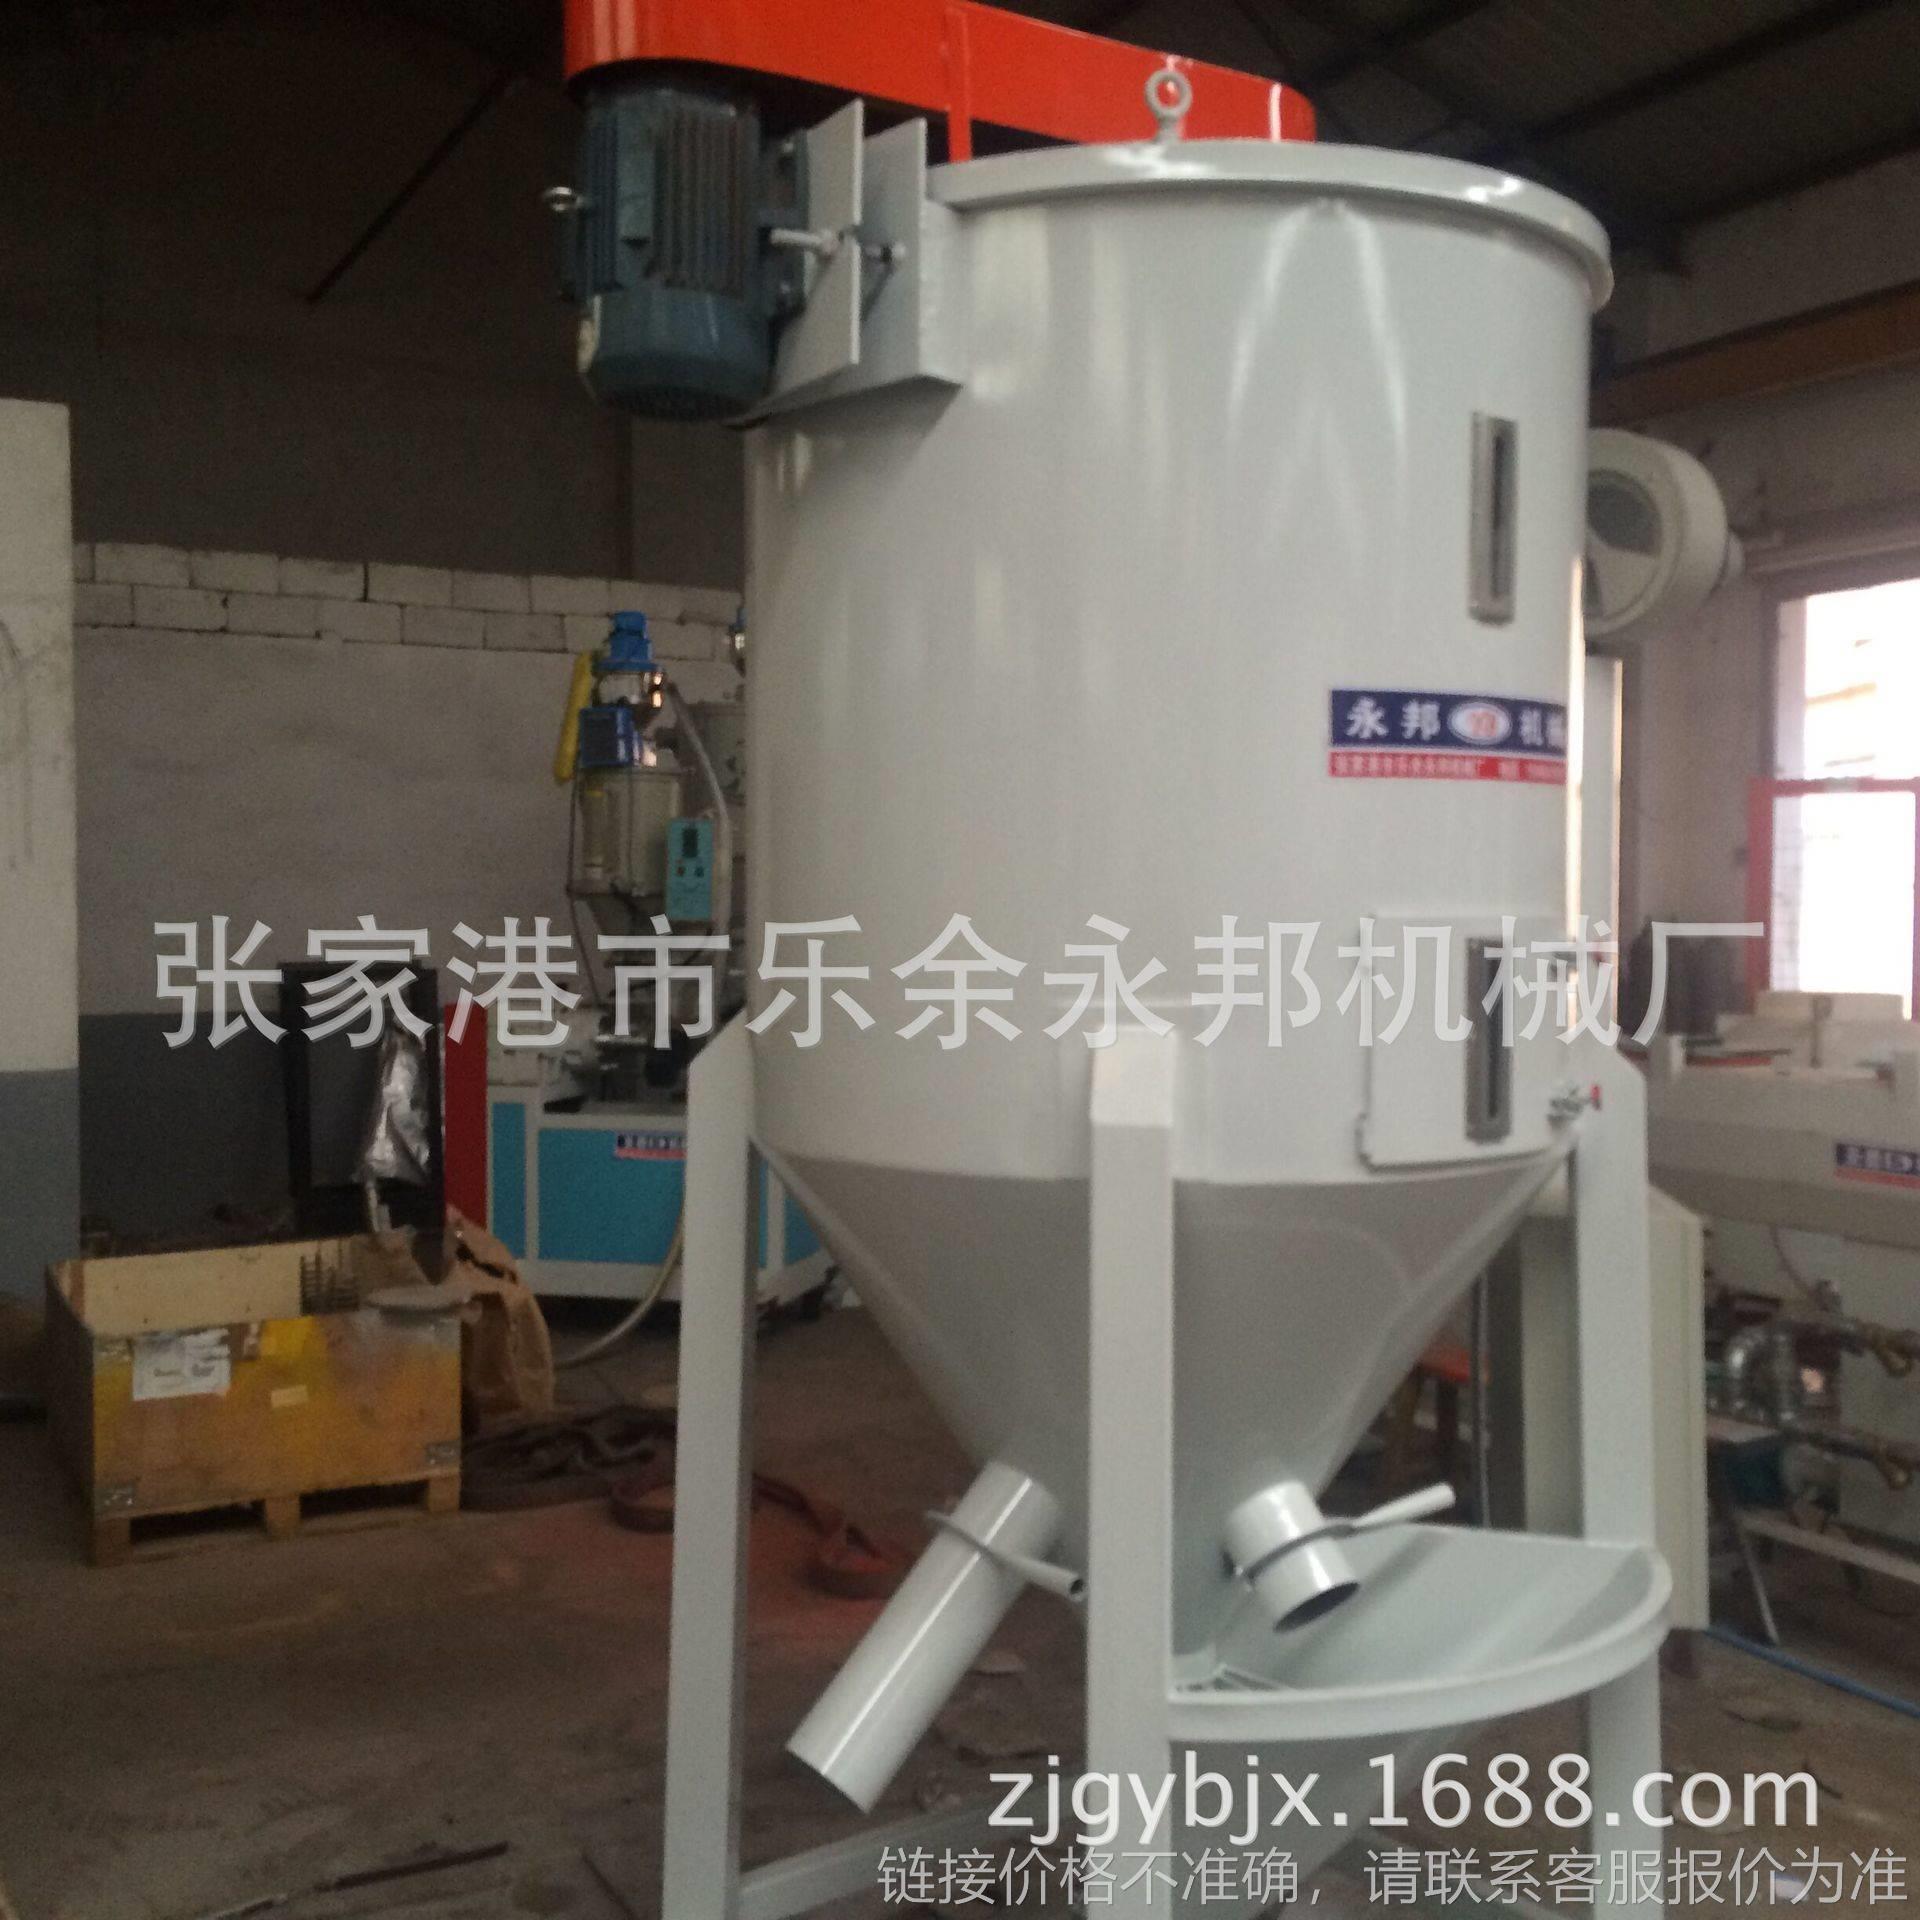 【立式搅拌干燥机】500公斤 混合干燥 塑料搅拌 立式干燥机定制